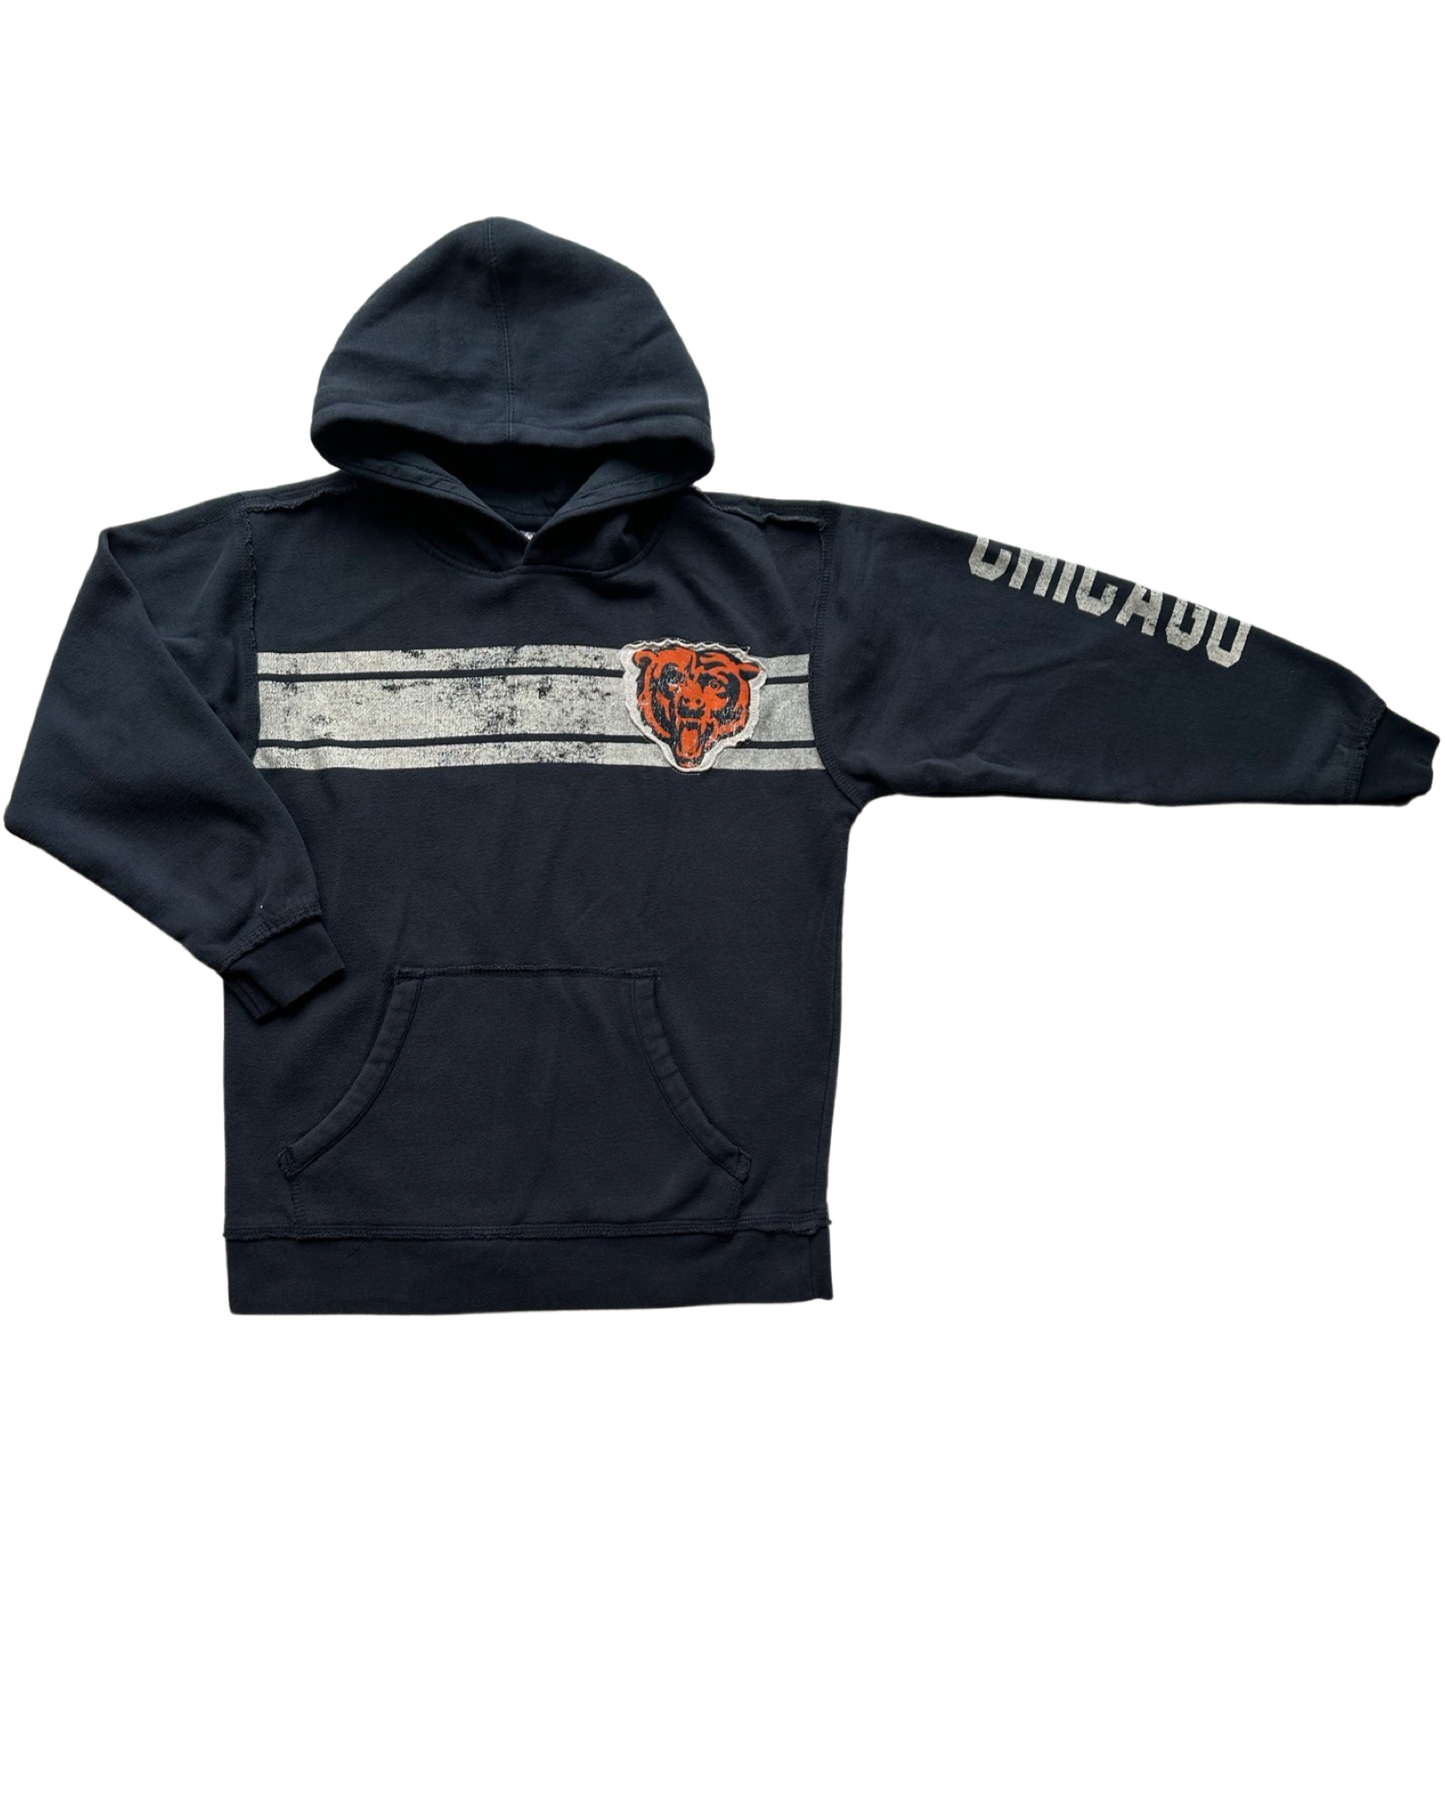 Vintage NFL Reebok Chicago Bears hoodie (10-12yrs)